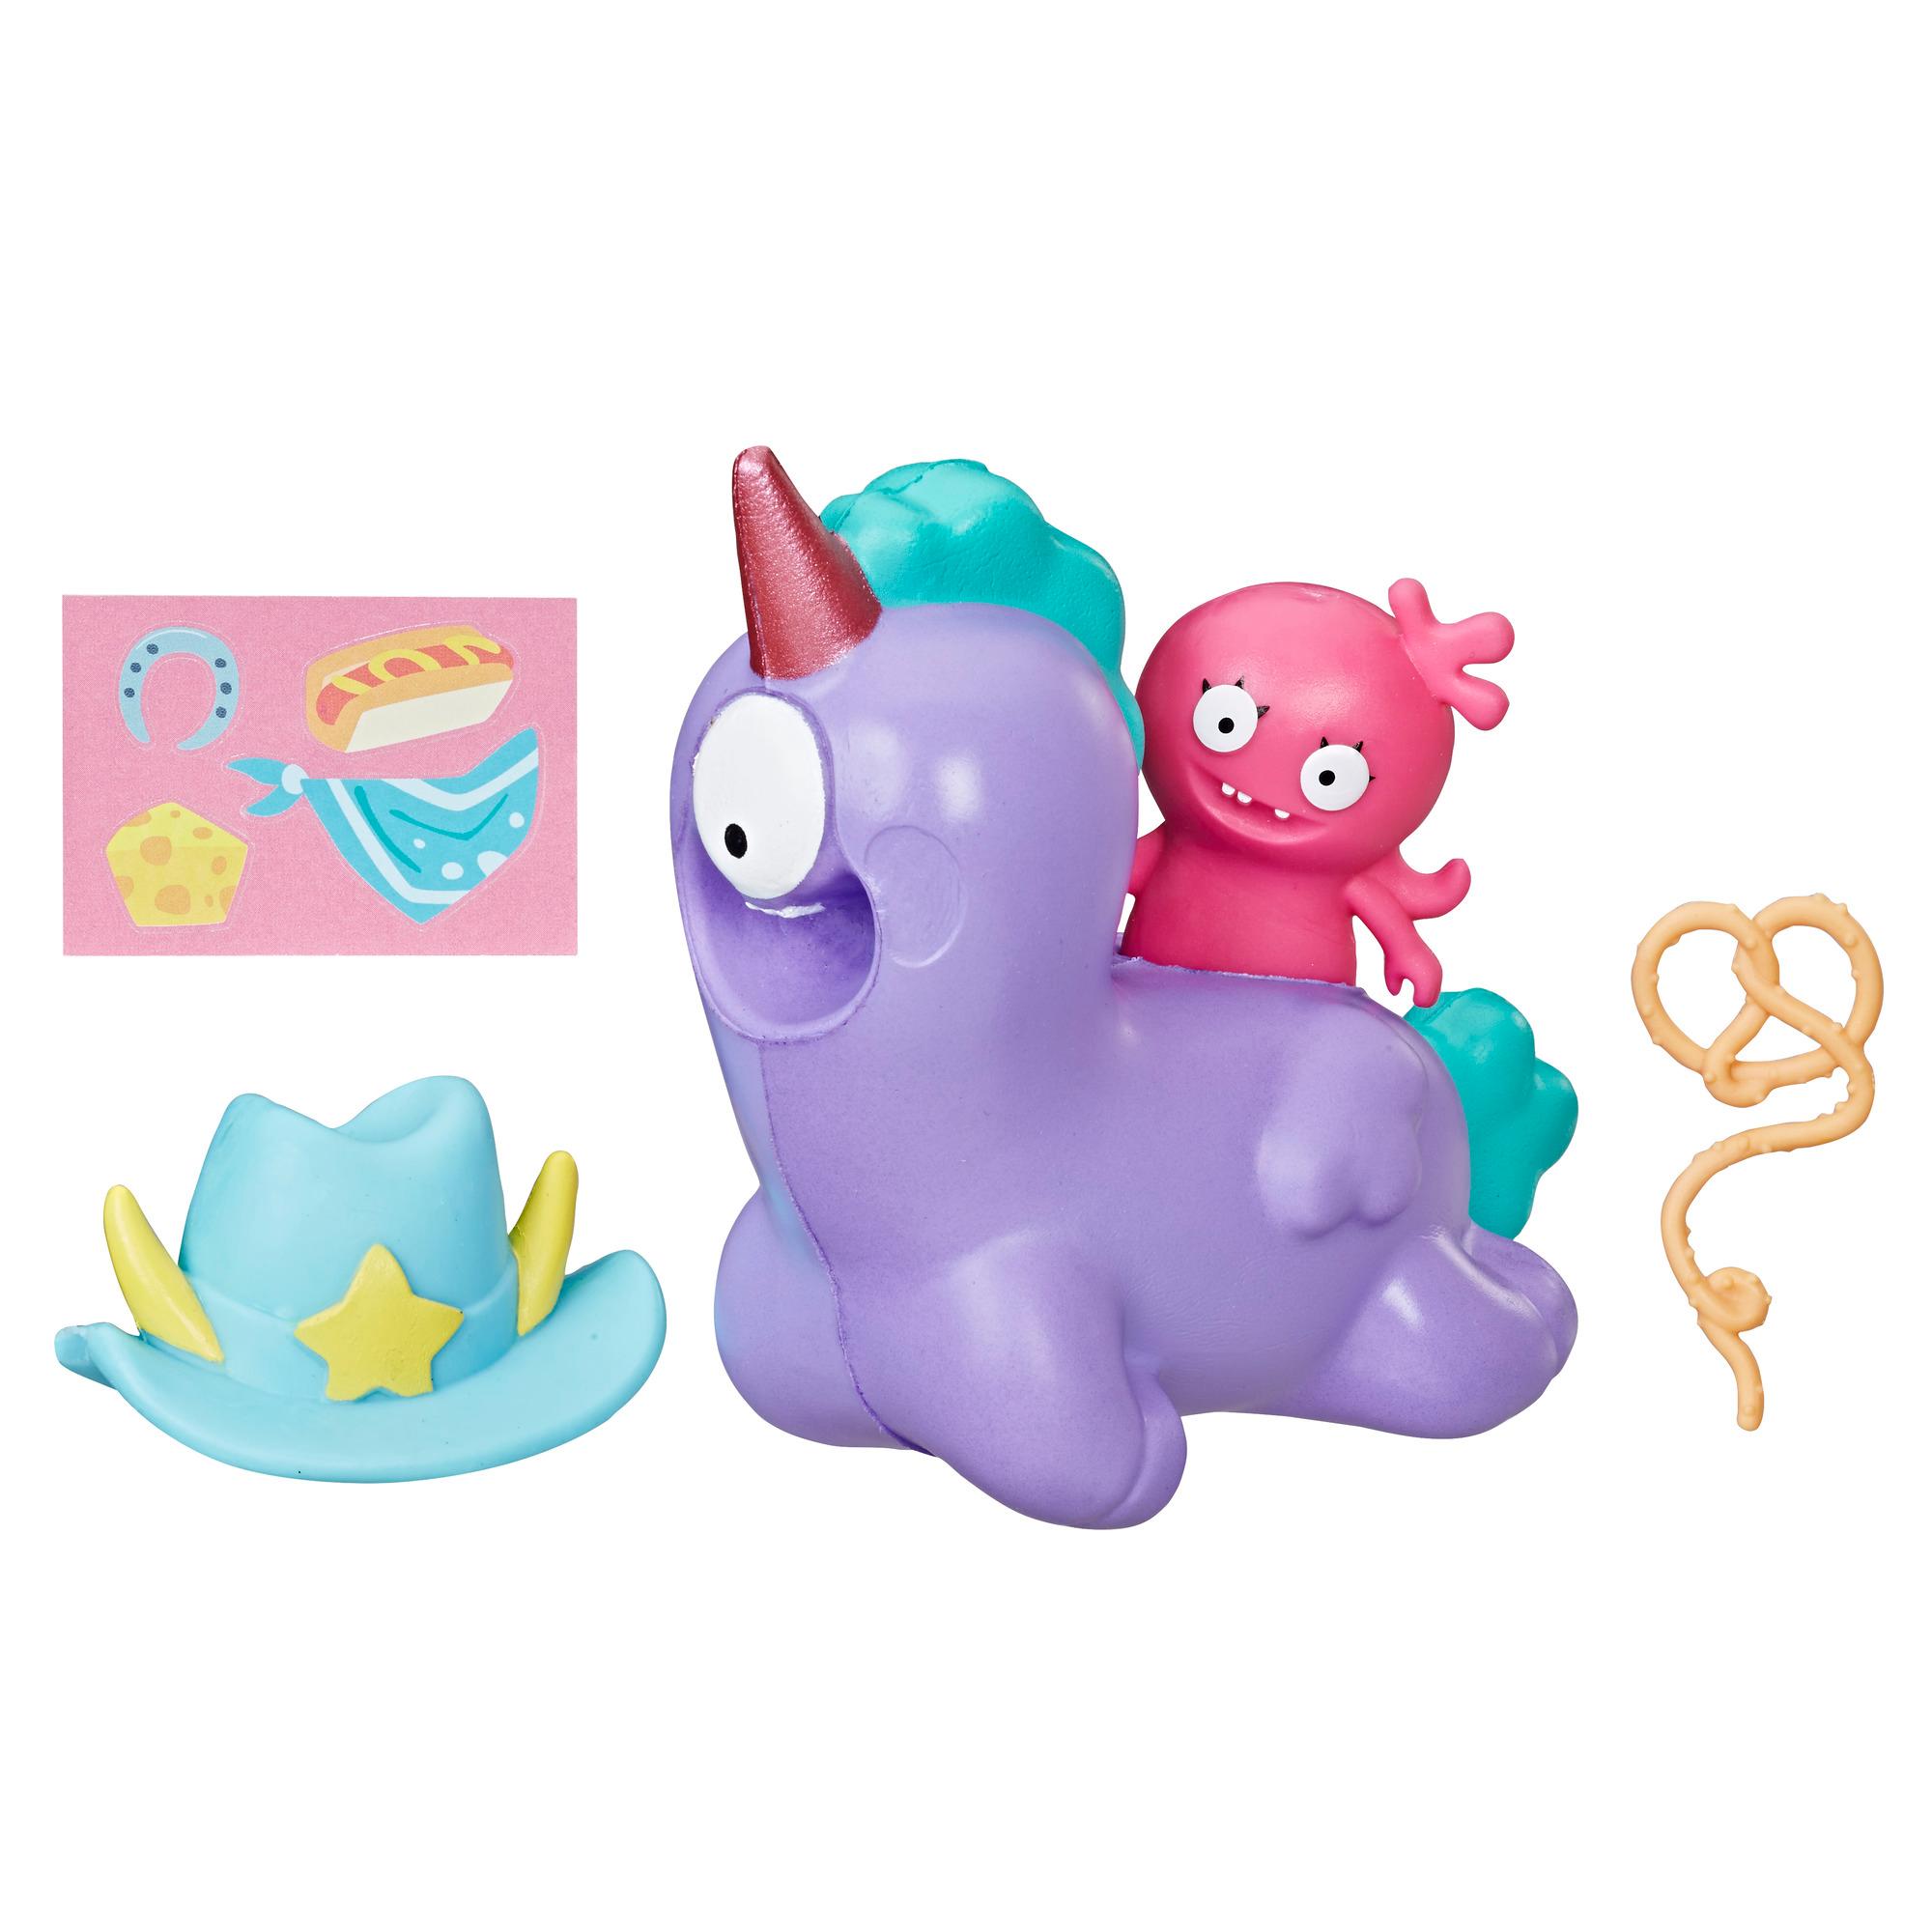 UglyDolls - Moxy et Peggy à emporter, 2 figurines à comprimer avec accessoires